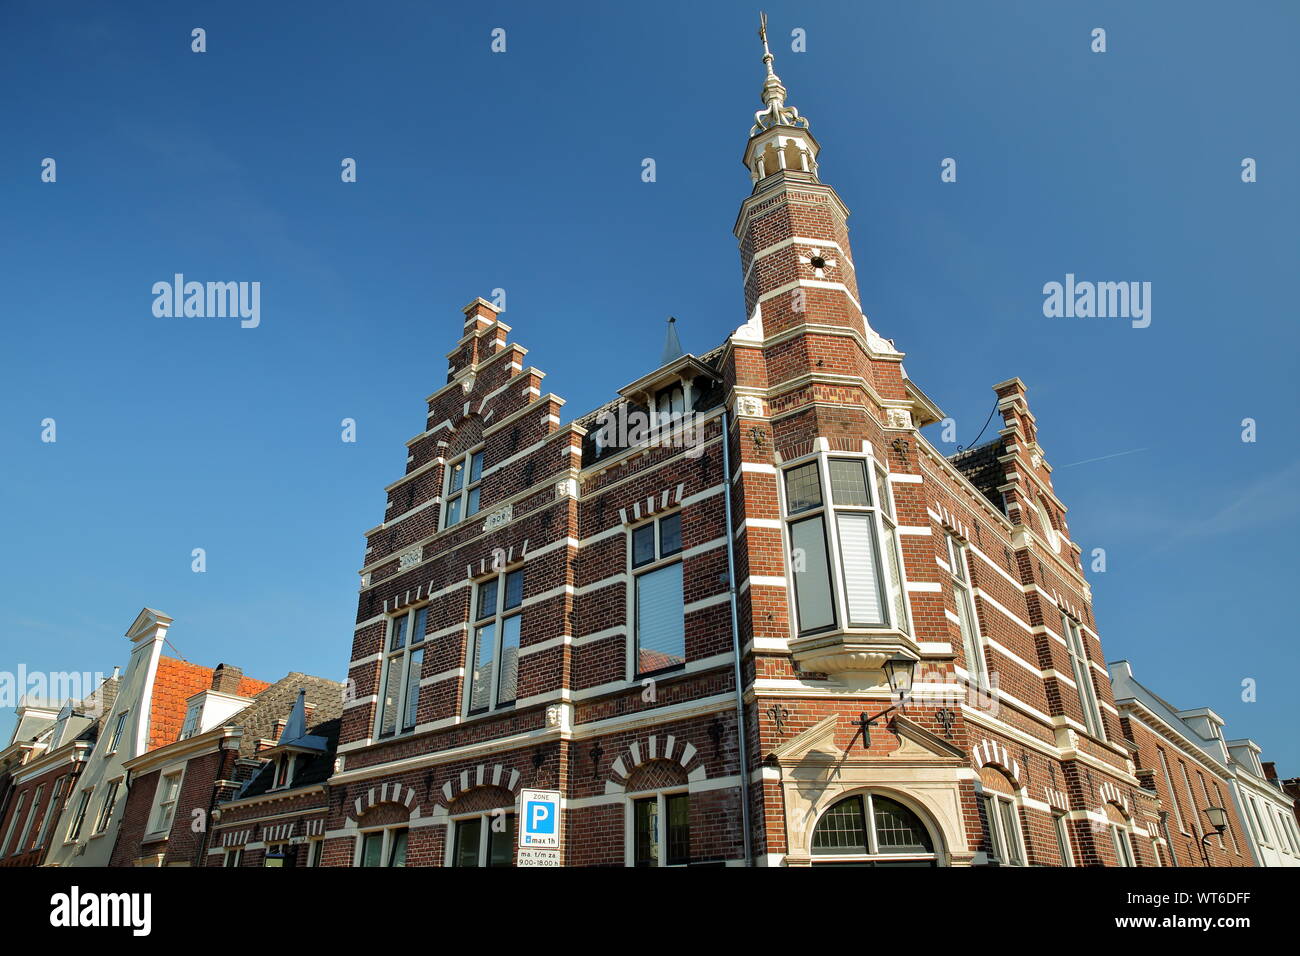 La facciata esterna di case storiche con intagli, situato sulla strada Cattenhage dentro la città fortificata di Naarden, Paesi Bassi Foto Stock